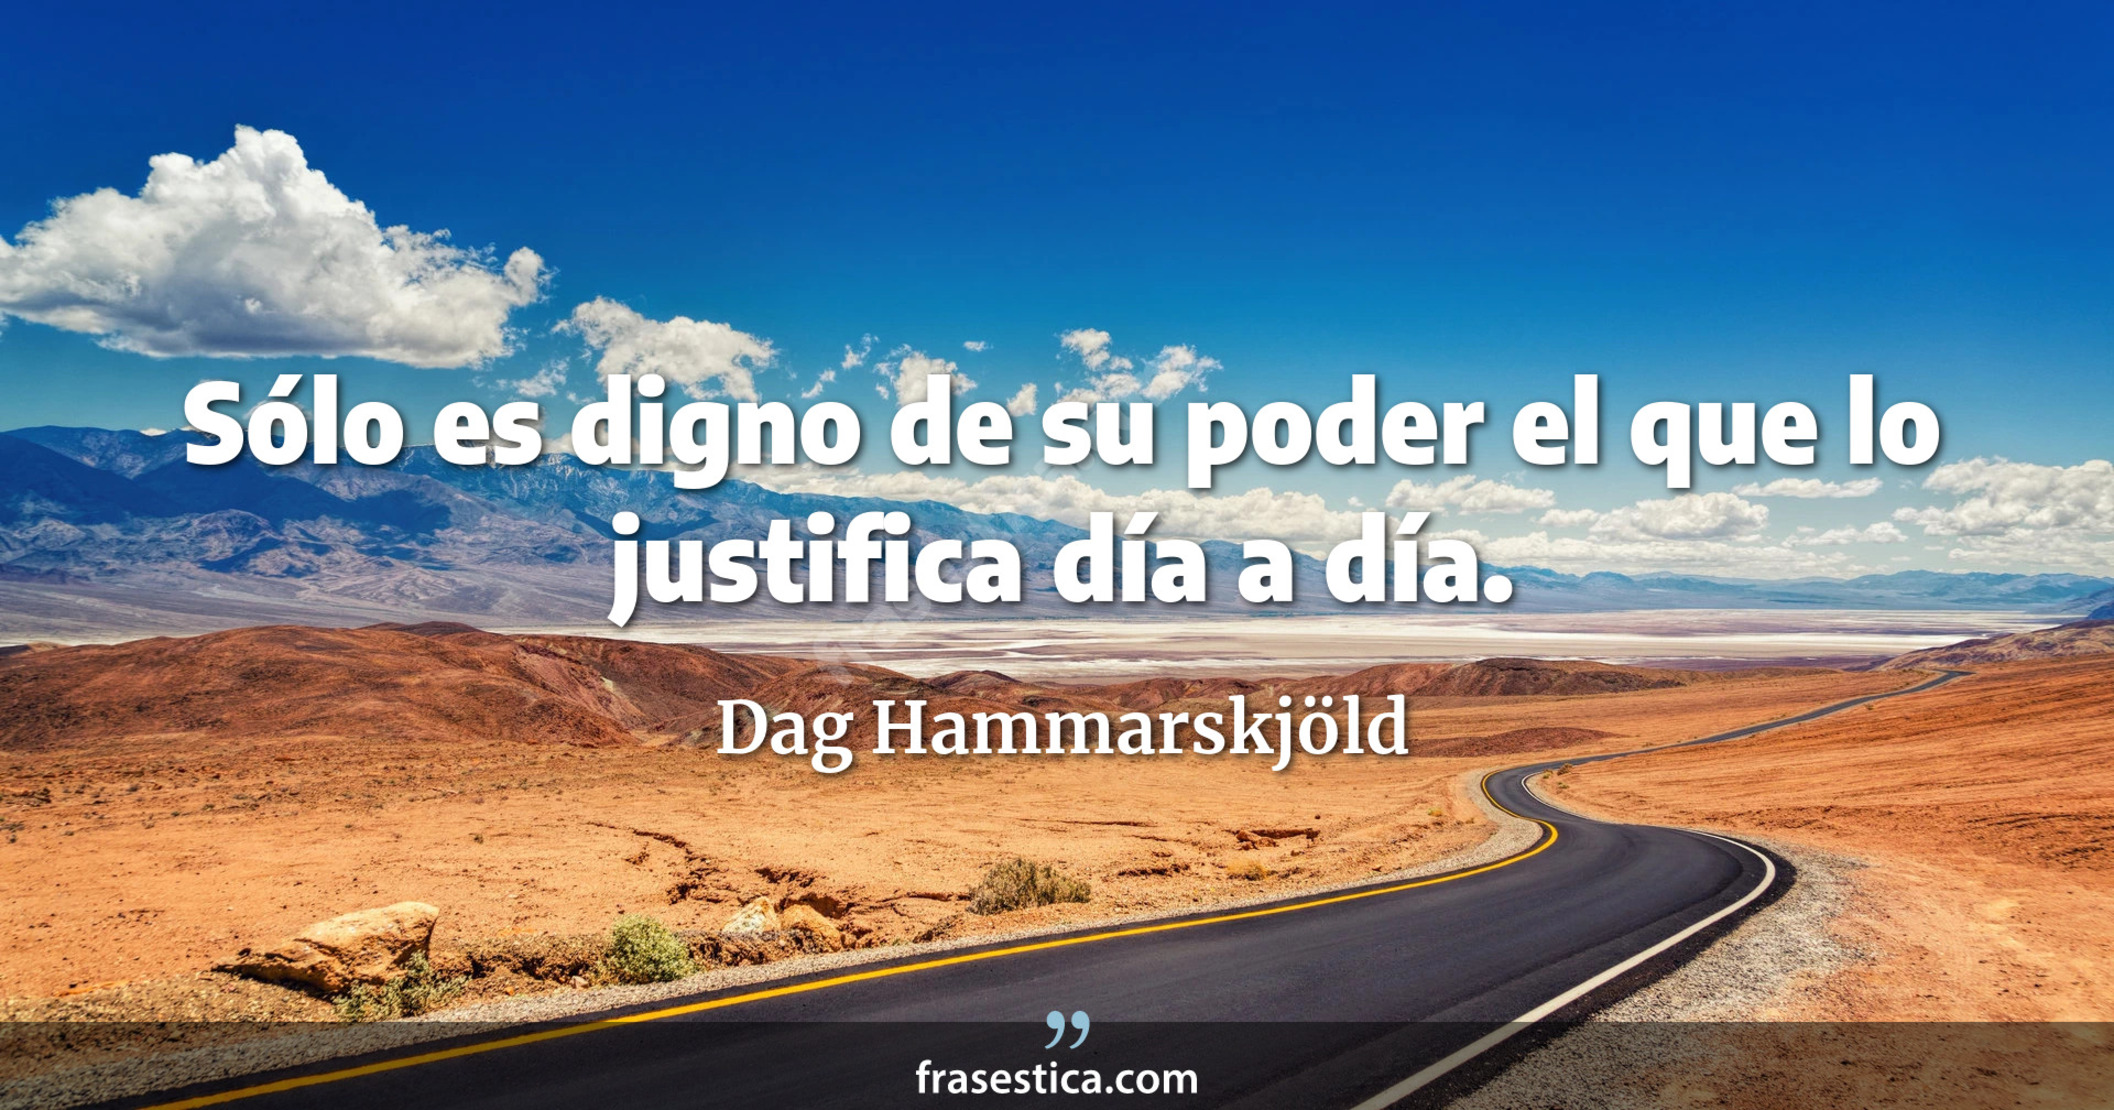 Sólo es digno de su poder el que lo justifica día a día. - Dag Hammarskjöld